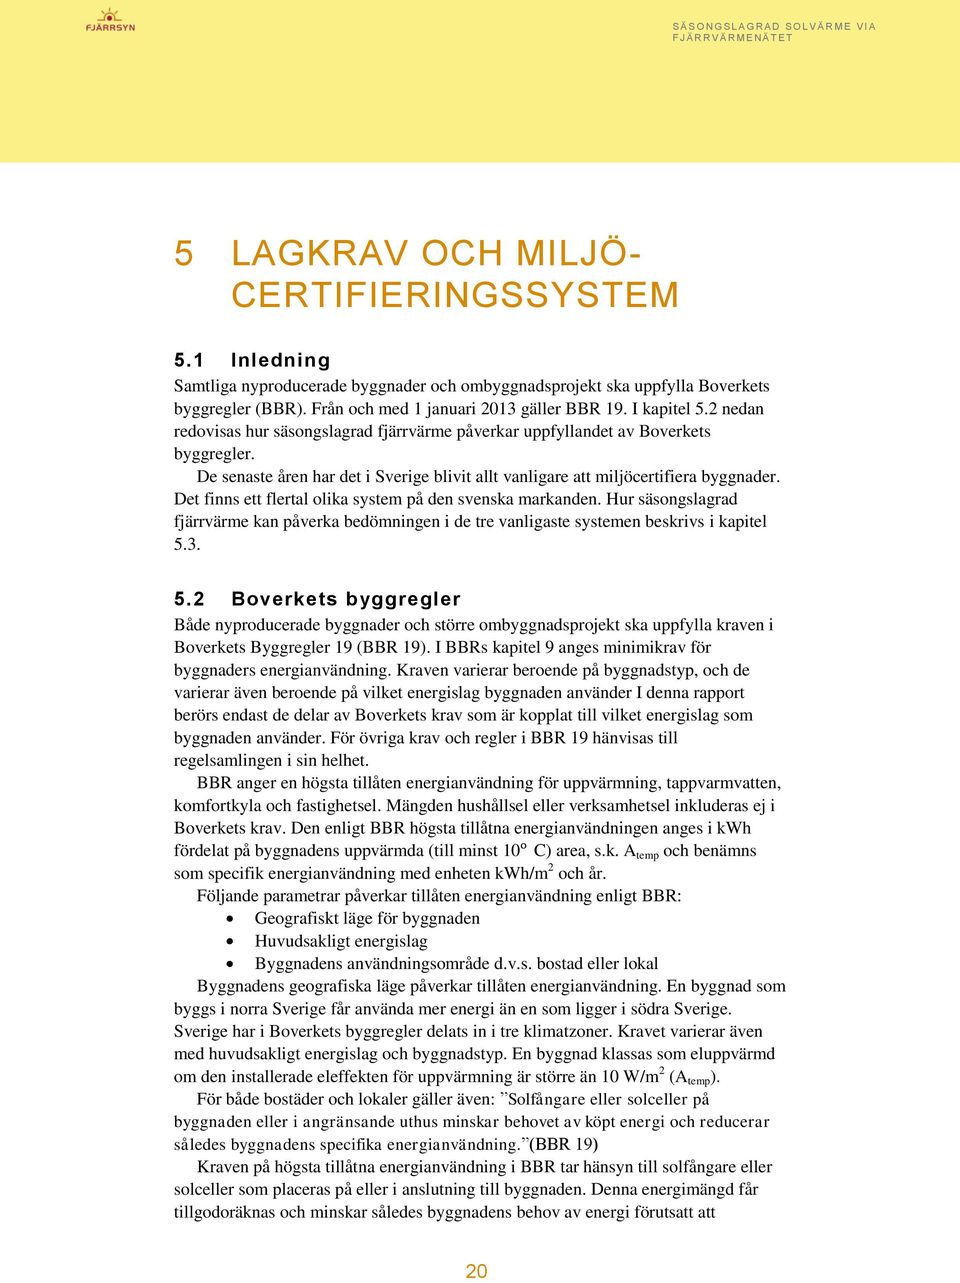 Det finns ett flertal olika system på den svenska markanden. Hur säsongslagrad fjärrvärme kan påverka bedömningen i de tre vanligaste systemen beskrivs i kapitel 5.